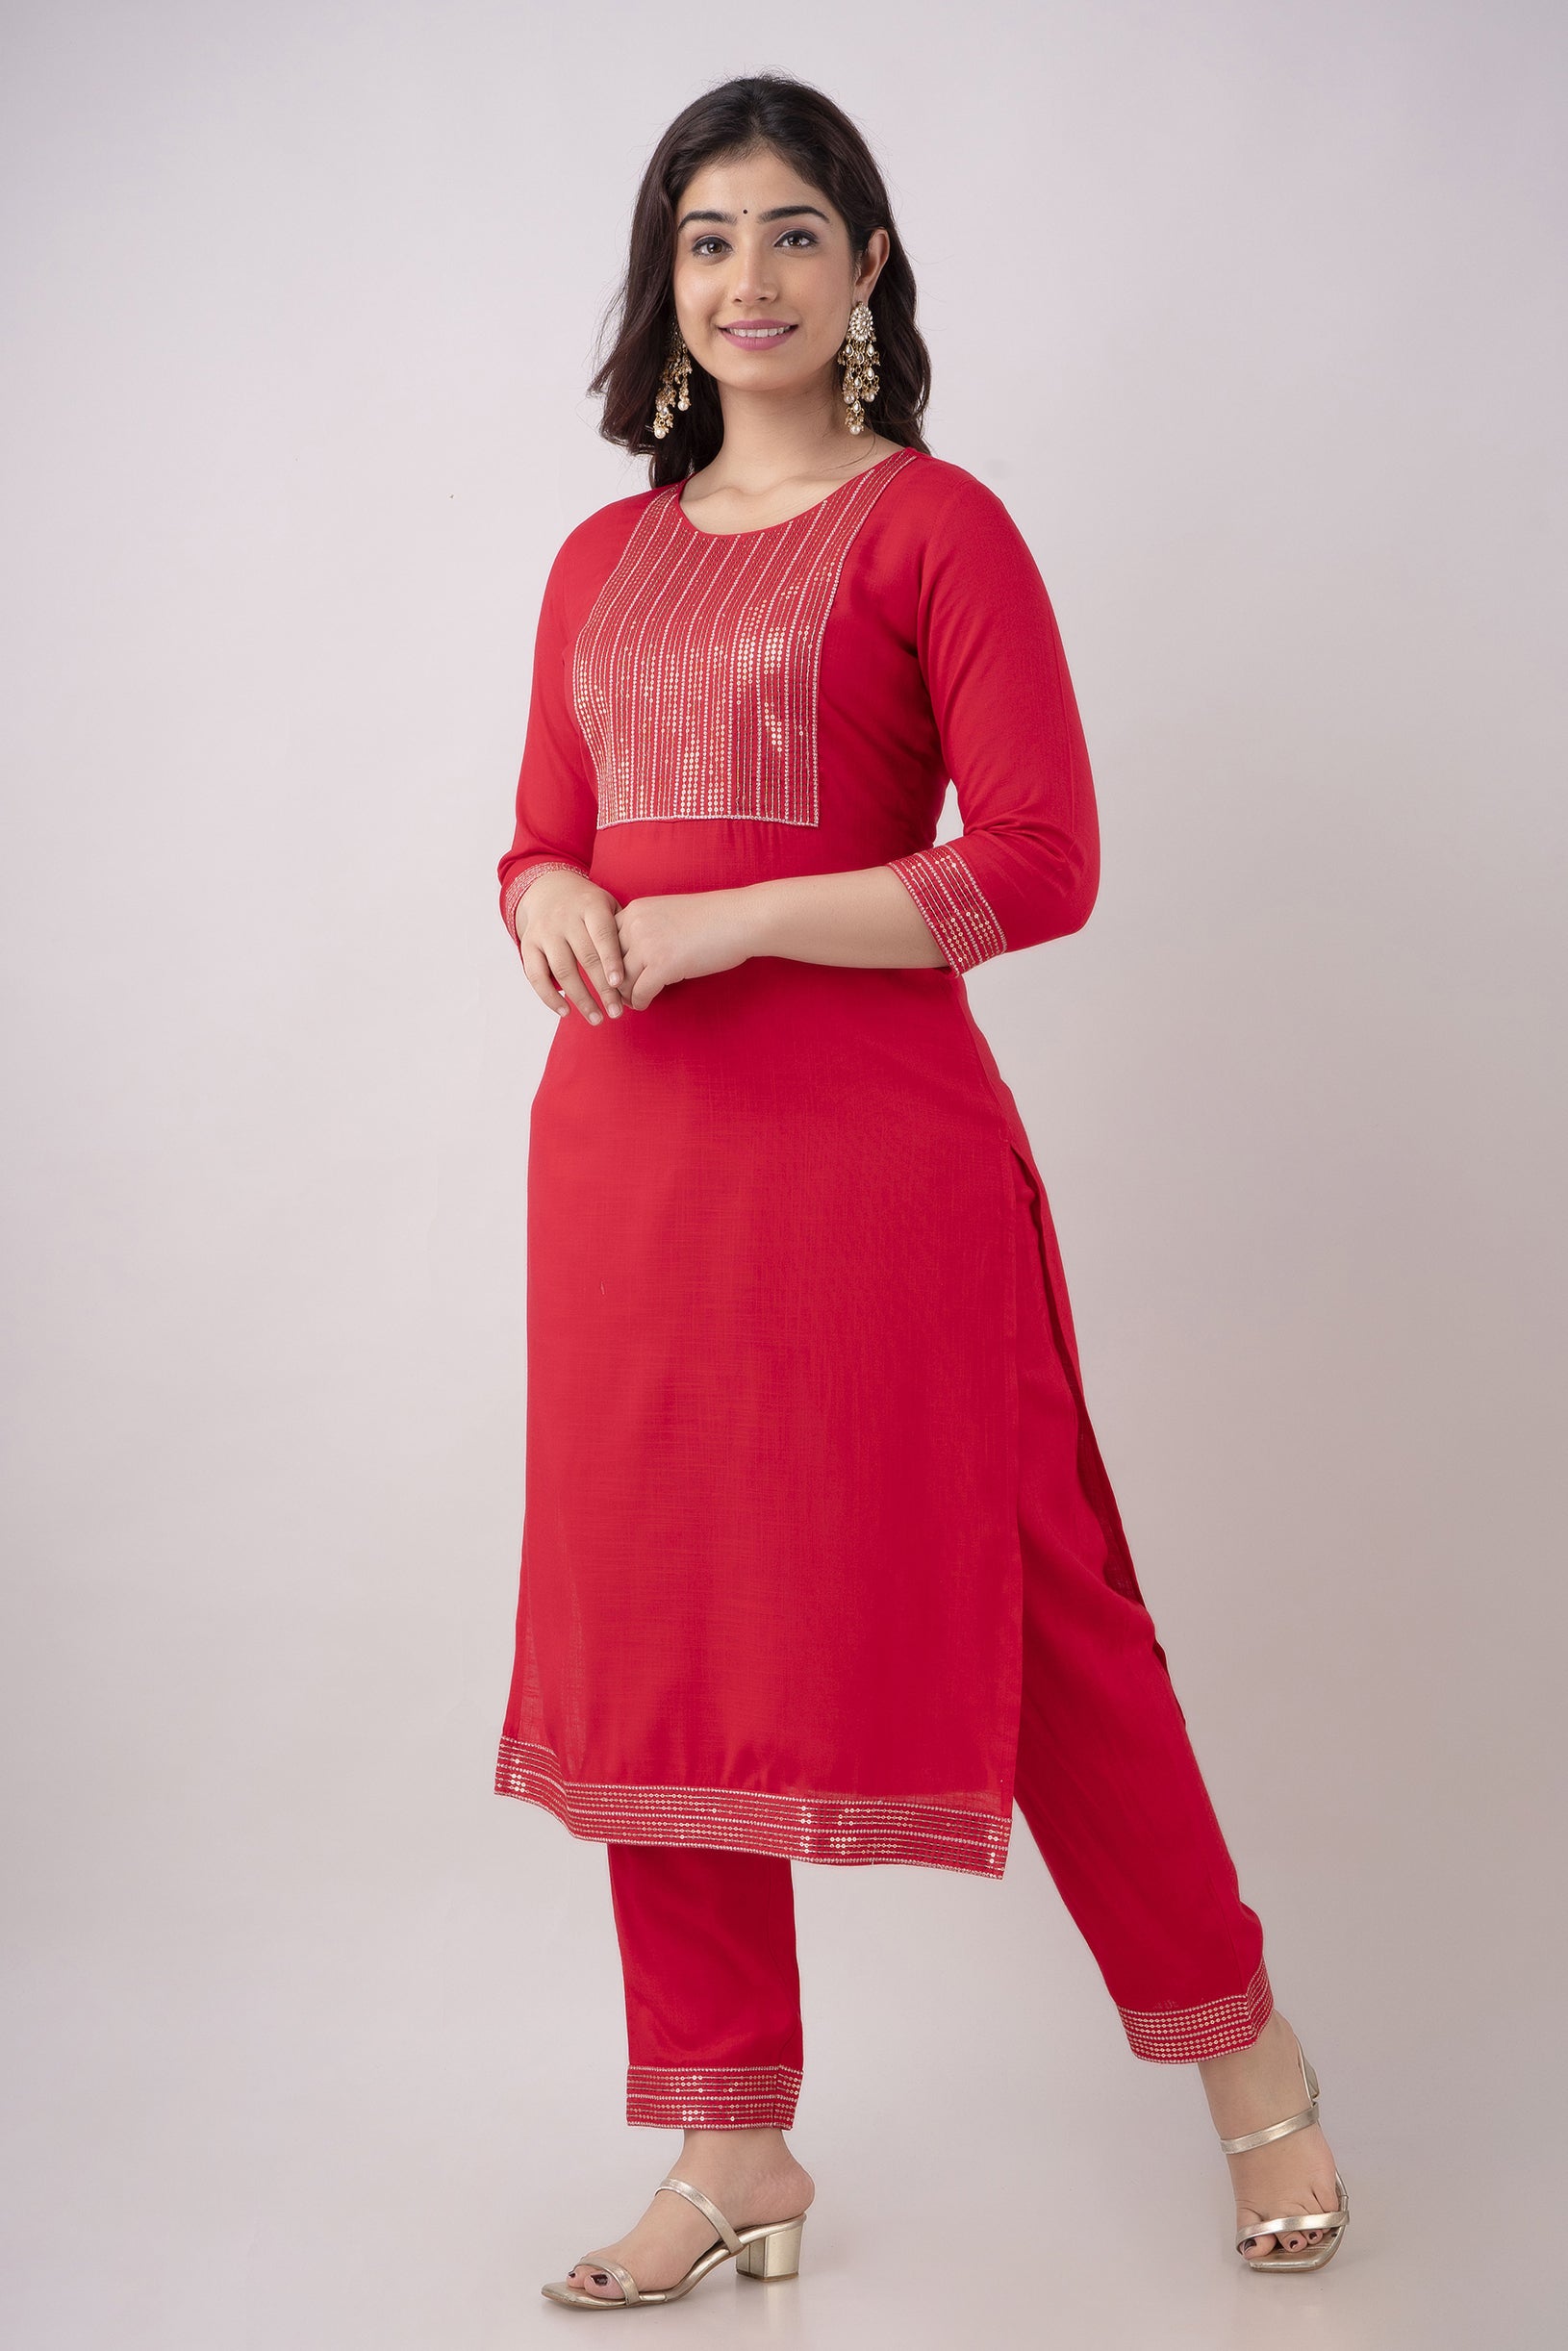 Women's Embroidered Viscose Rayon Straight Kurta Pant & Dupatta Set (Rani) - Charu